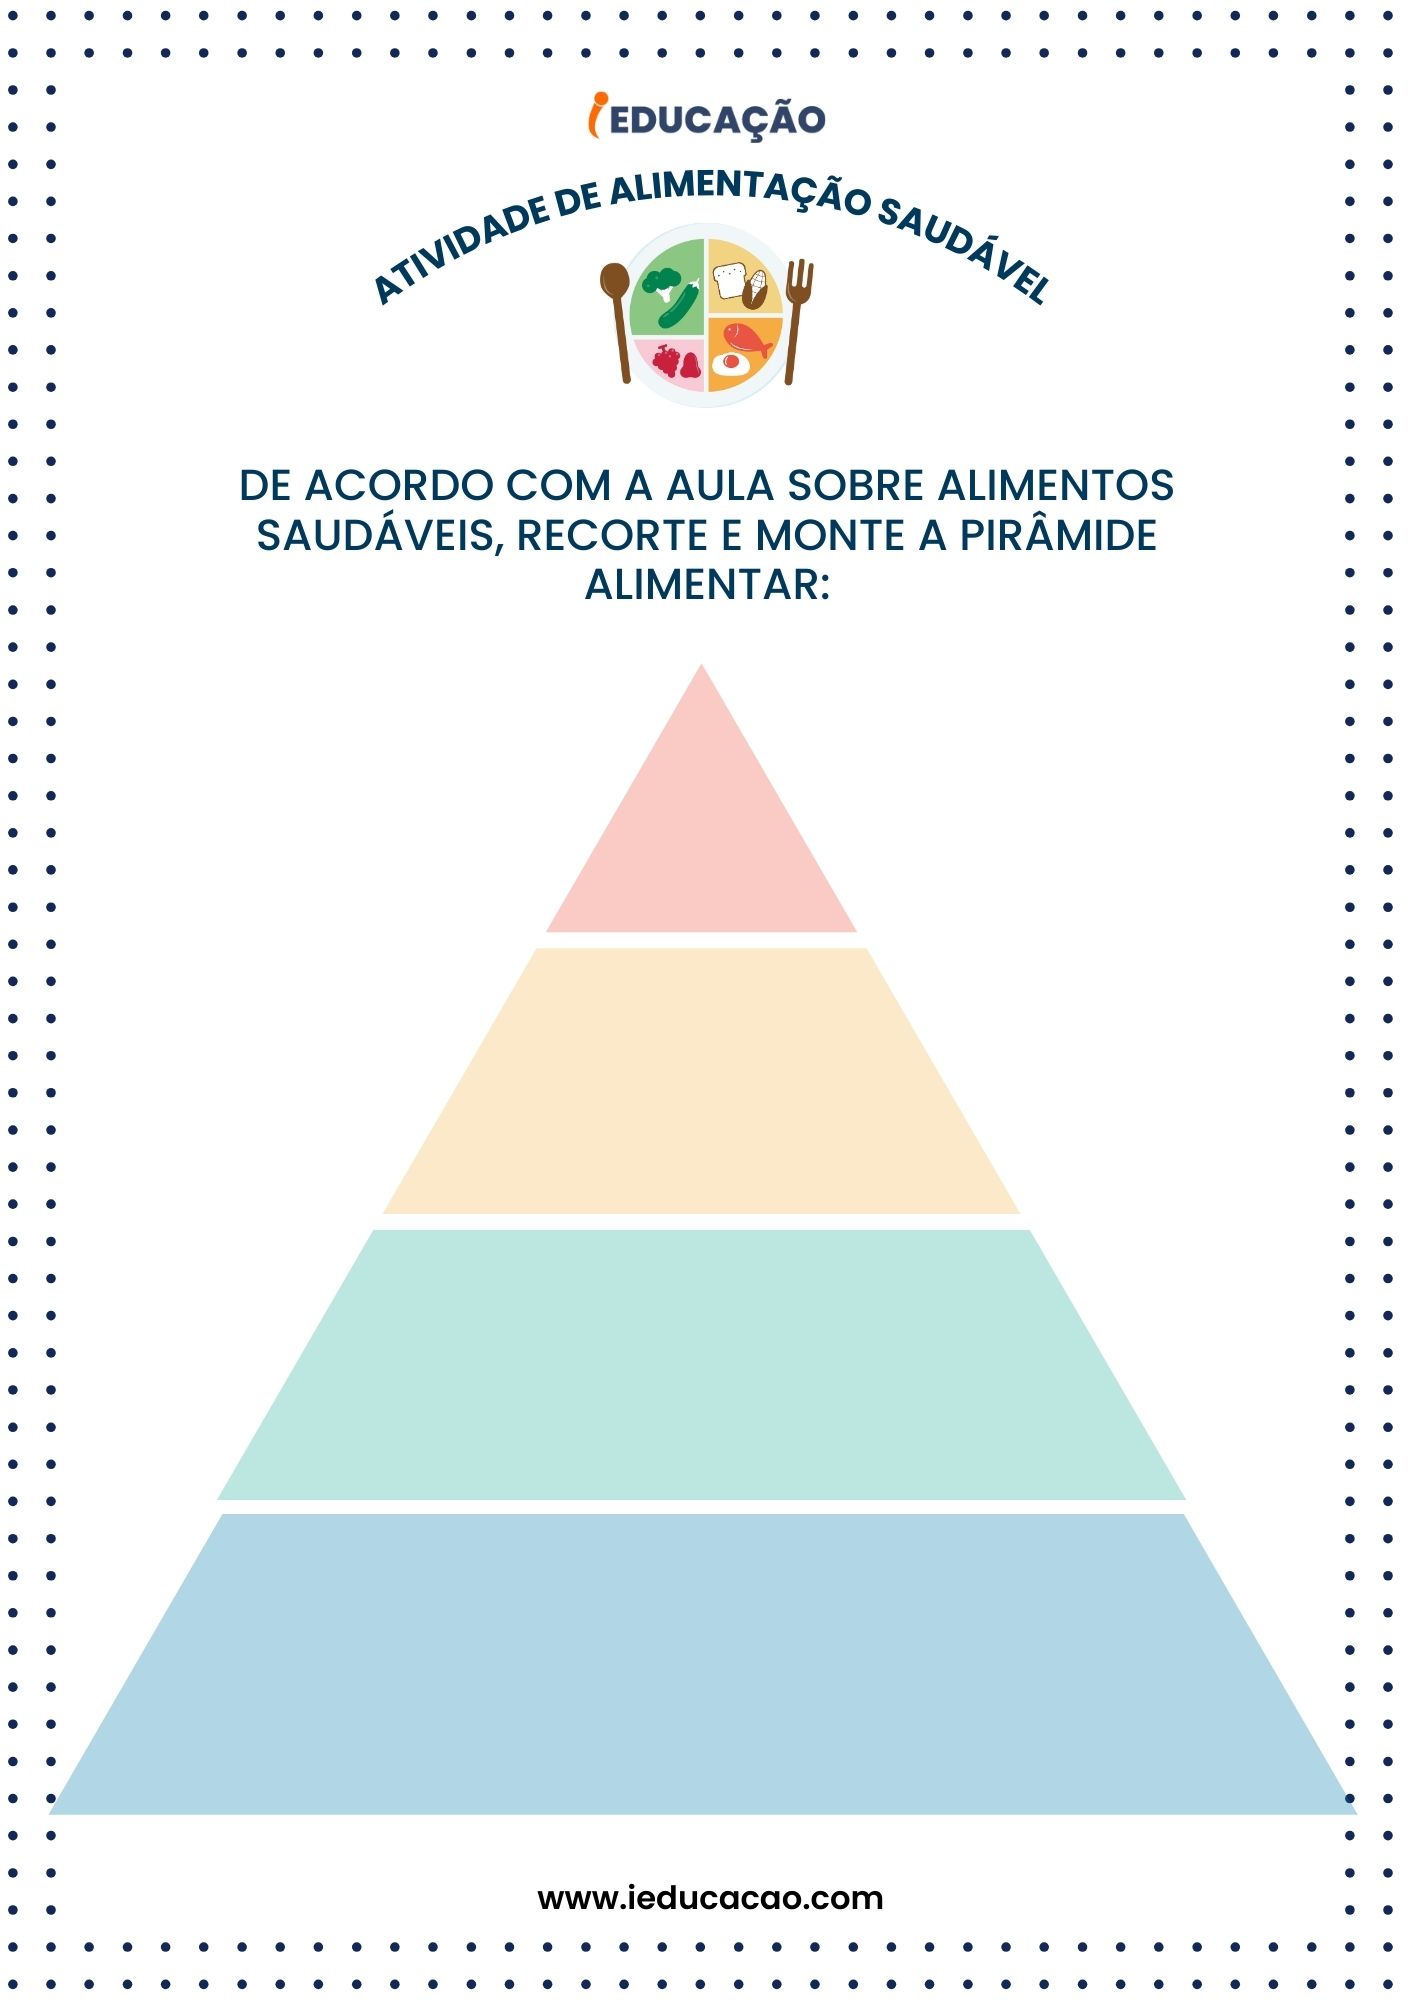 Atividades de Alimentação Saudável - Pirâmide Alimentar para Educação Infantil.jpg